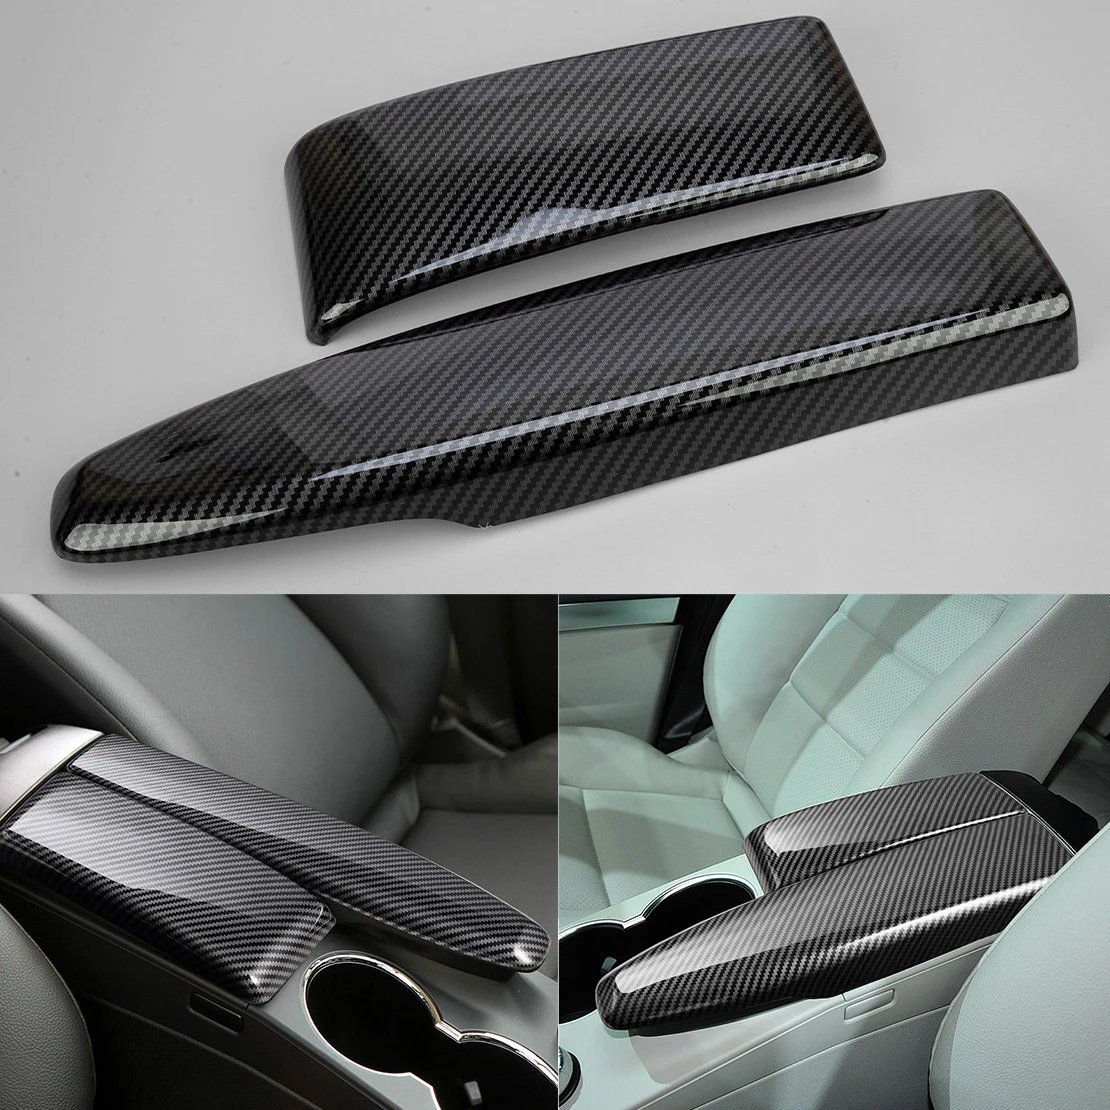 

2Pcs Car Center Armrest Box Panel Cover Carbon Fiber Style Black ABS Fit for Benz C W204 E W212 GLK X204 2010 2011 2012 2013